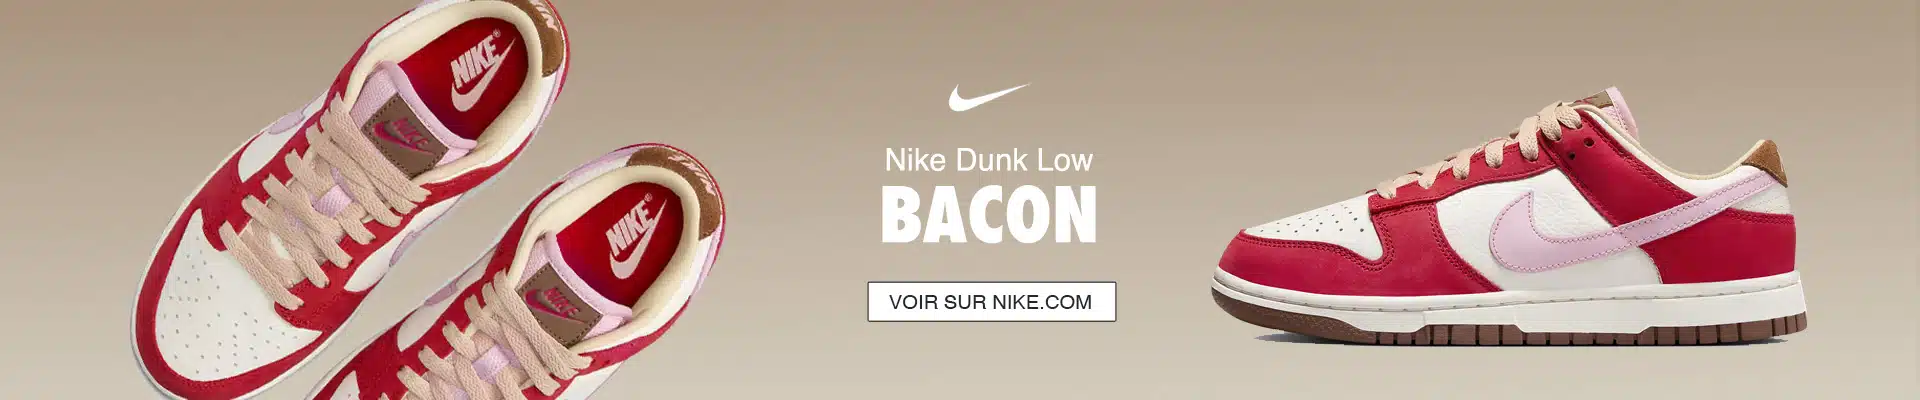 Más Air Force 1 en Chron Nike Bacon